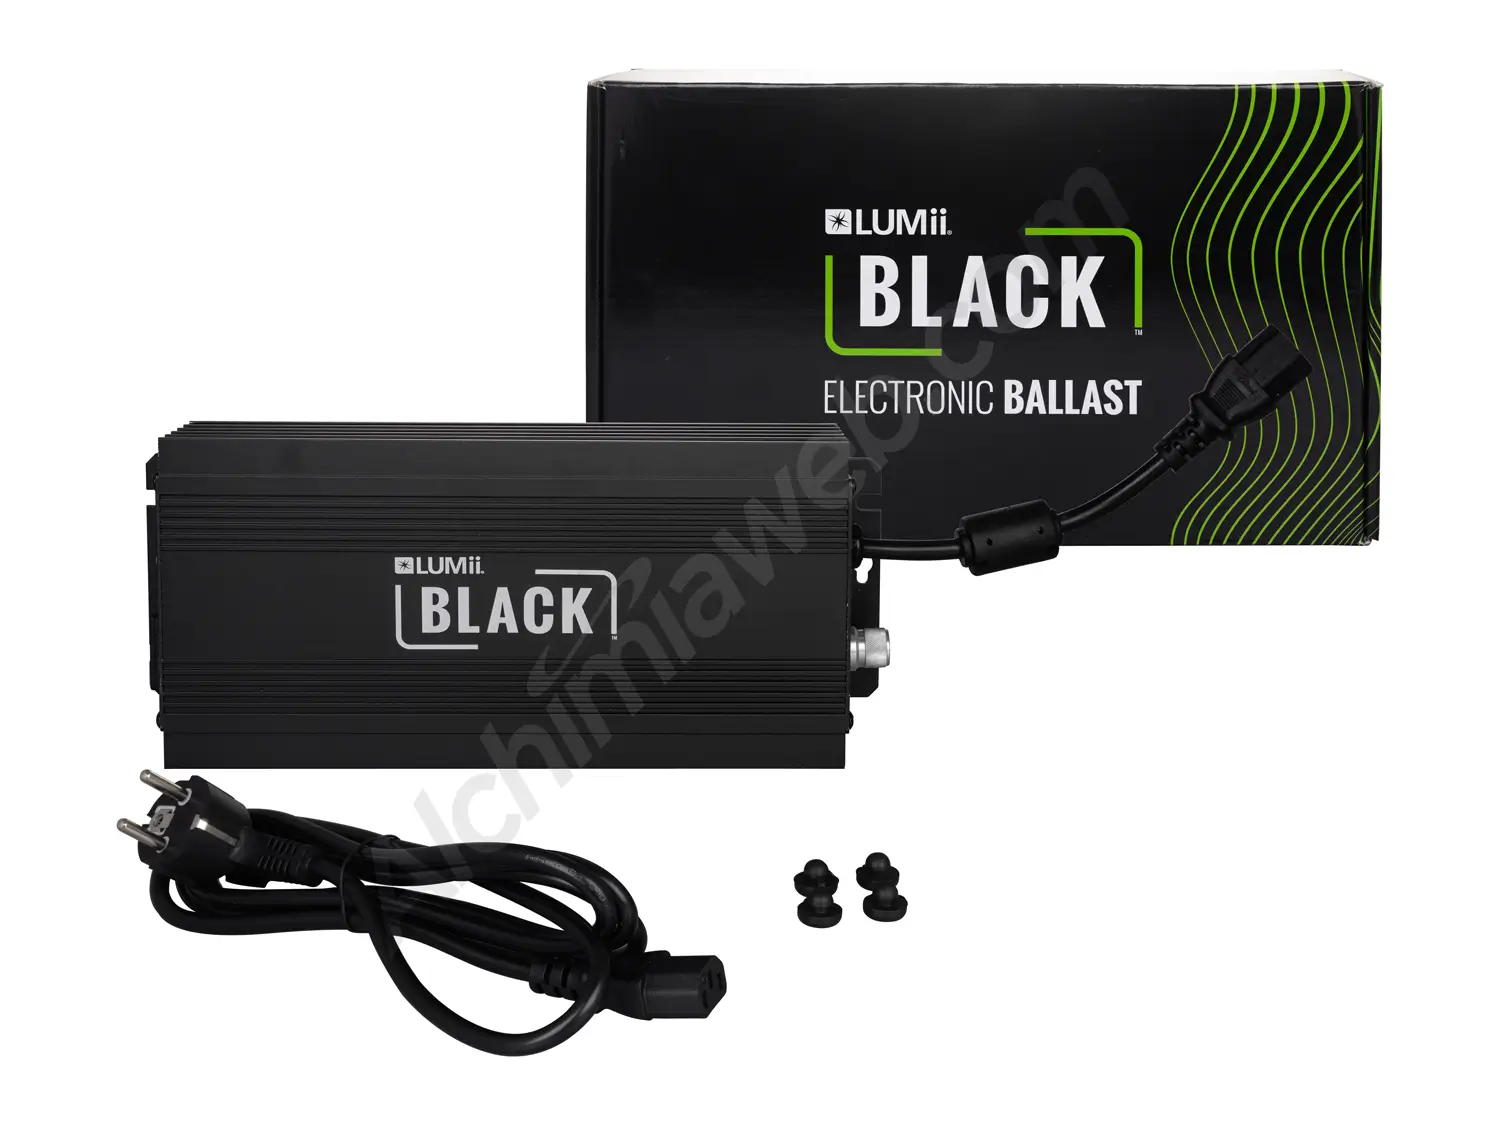 Verkauf des elektronischen Vorschaltgeräts Lumii Black 600 W